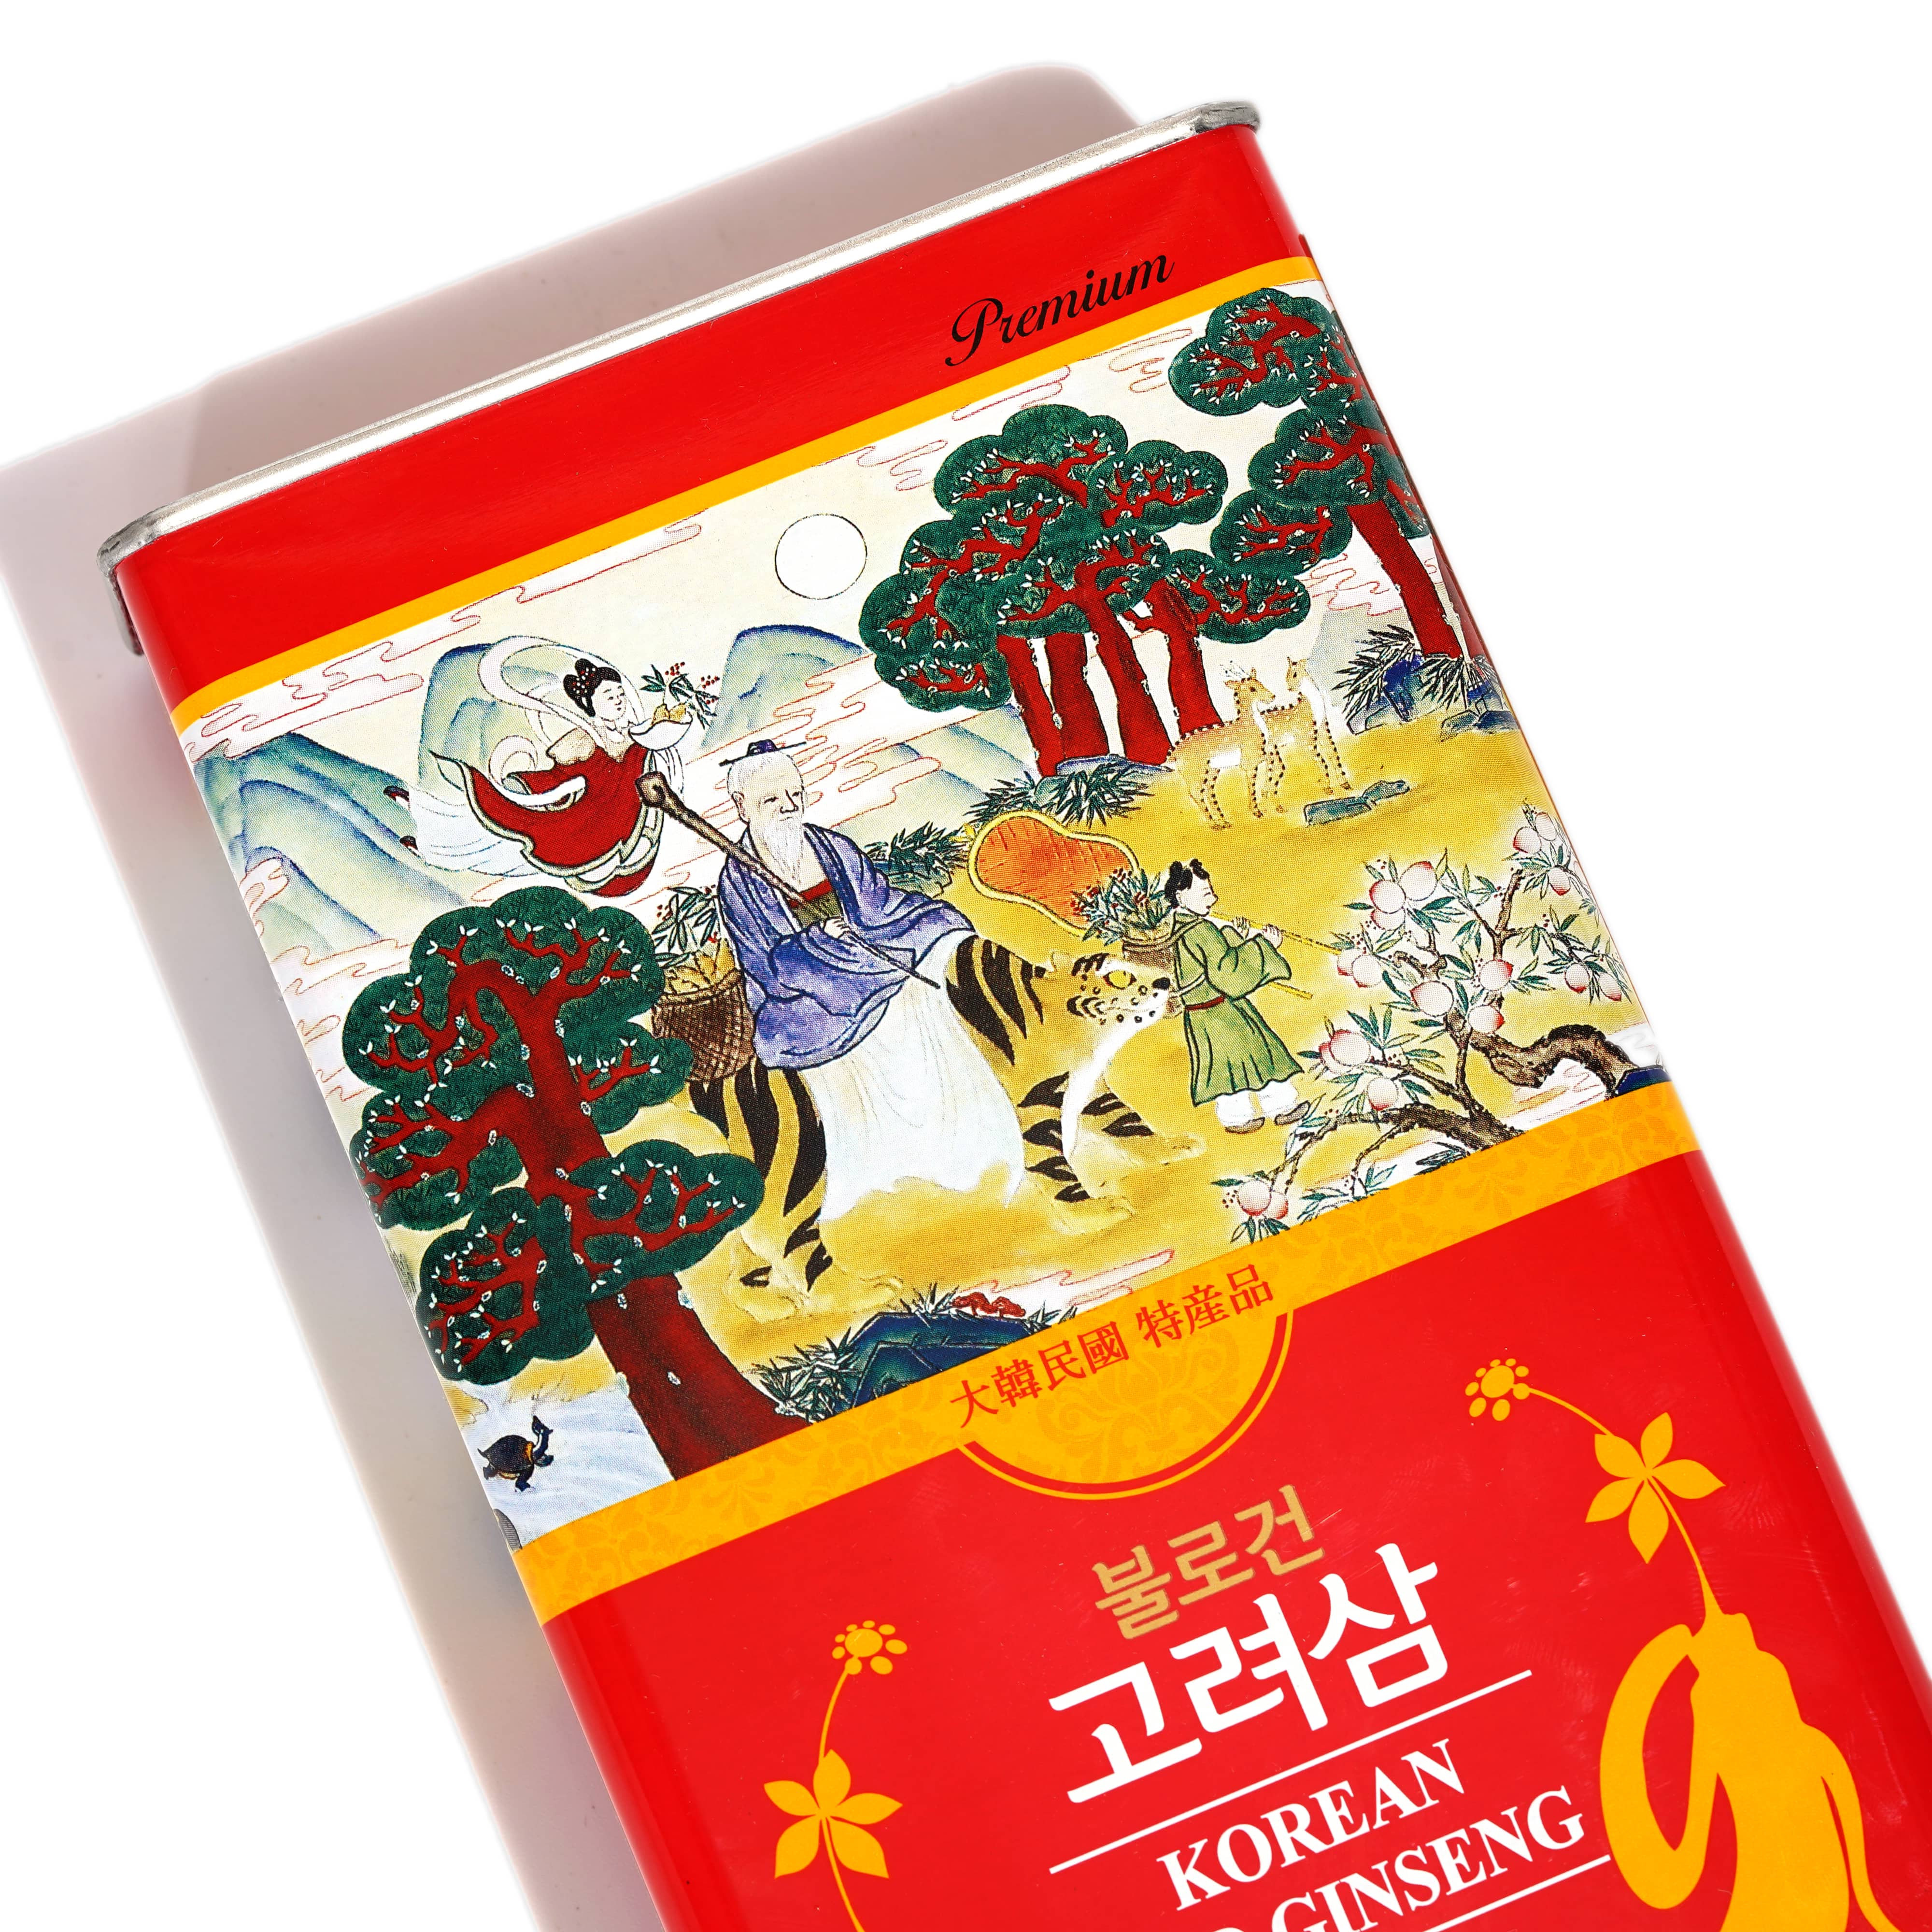 Hồng sâm củ khô Hàn Quốc Daedong Korea Ginseng 300g dòng Premium củ nhỏ (11 -20 củ) - Tăng cường trí nhớ, hỗ trợ giảm mỡ máu, phòng ngừa tiểu đường, huyết áp